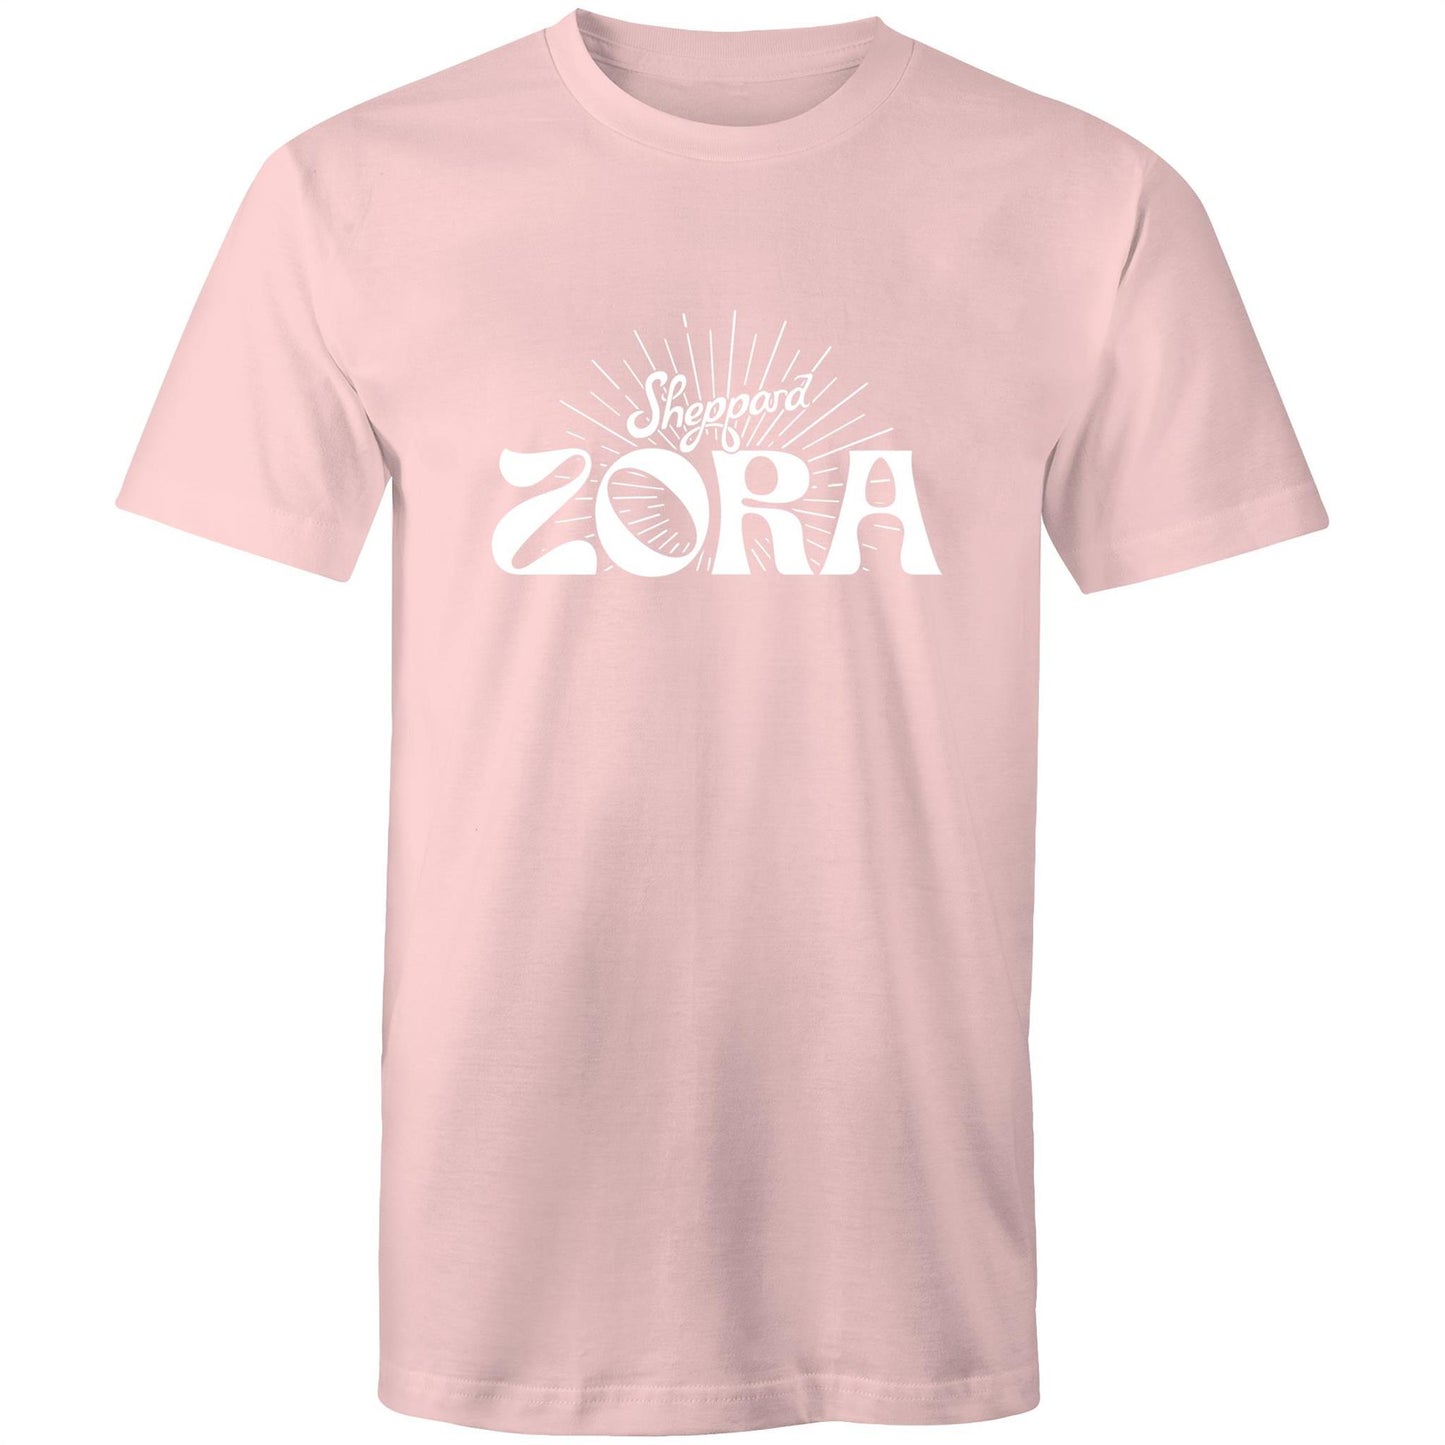 Zora T-Shirt